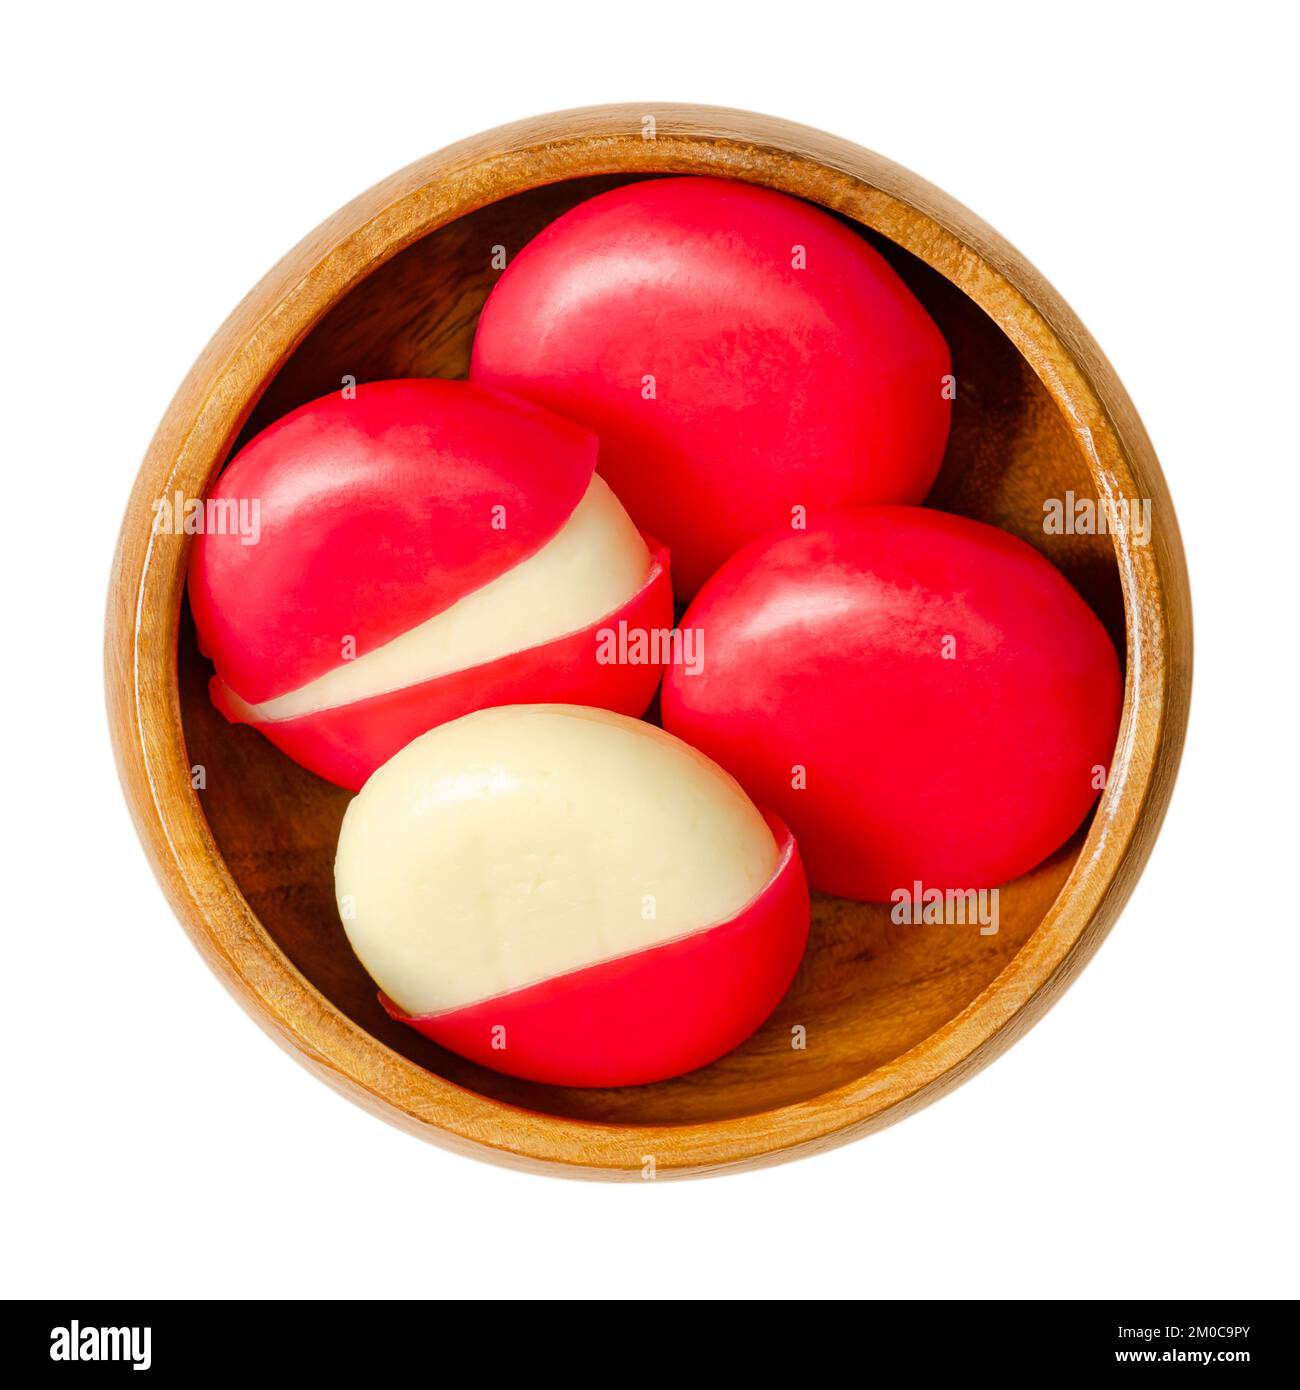 Disques à grignoter au fromage dans des encaissements de cire rouge, dans un bol en bois. Petites tranches d'edam, chacune enchâssée dans un mélange de paraffine rouge. Banque D'Images